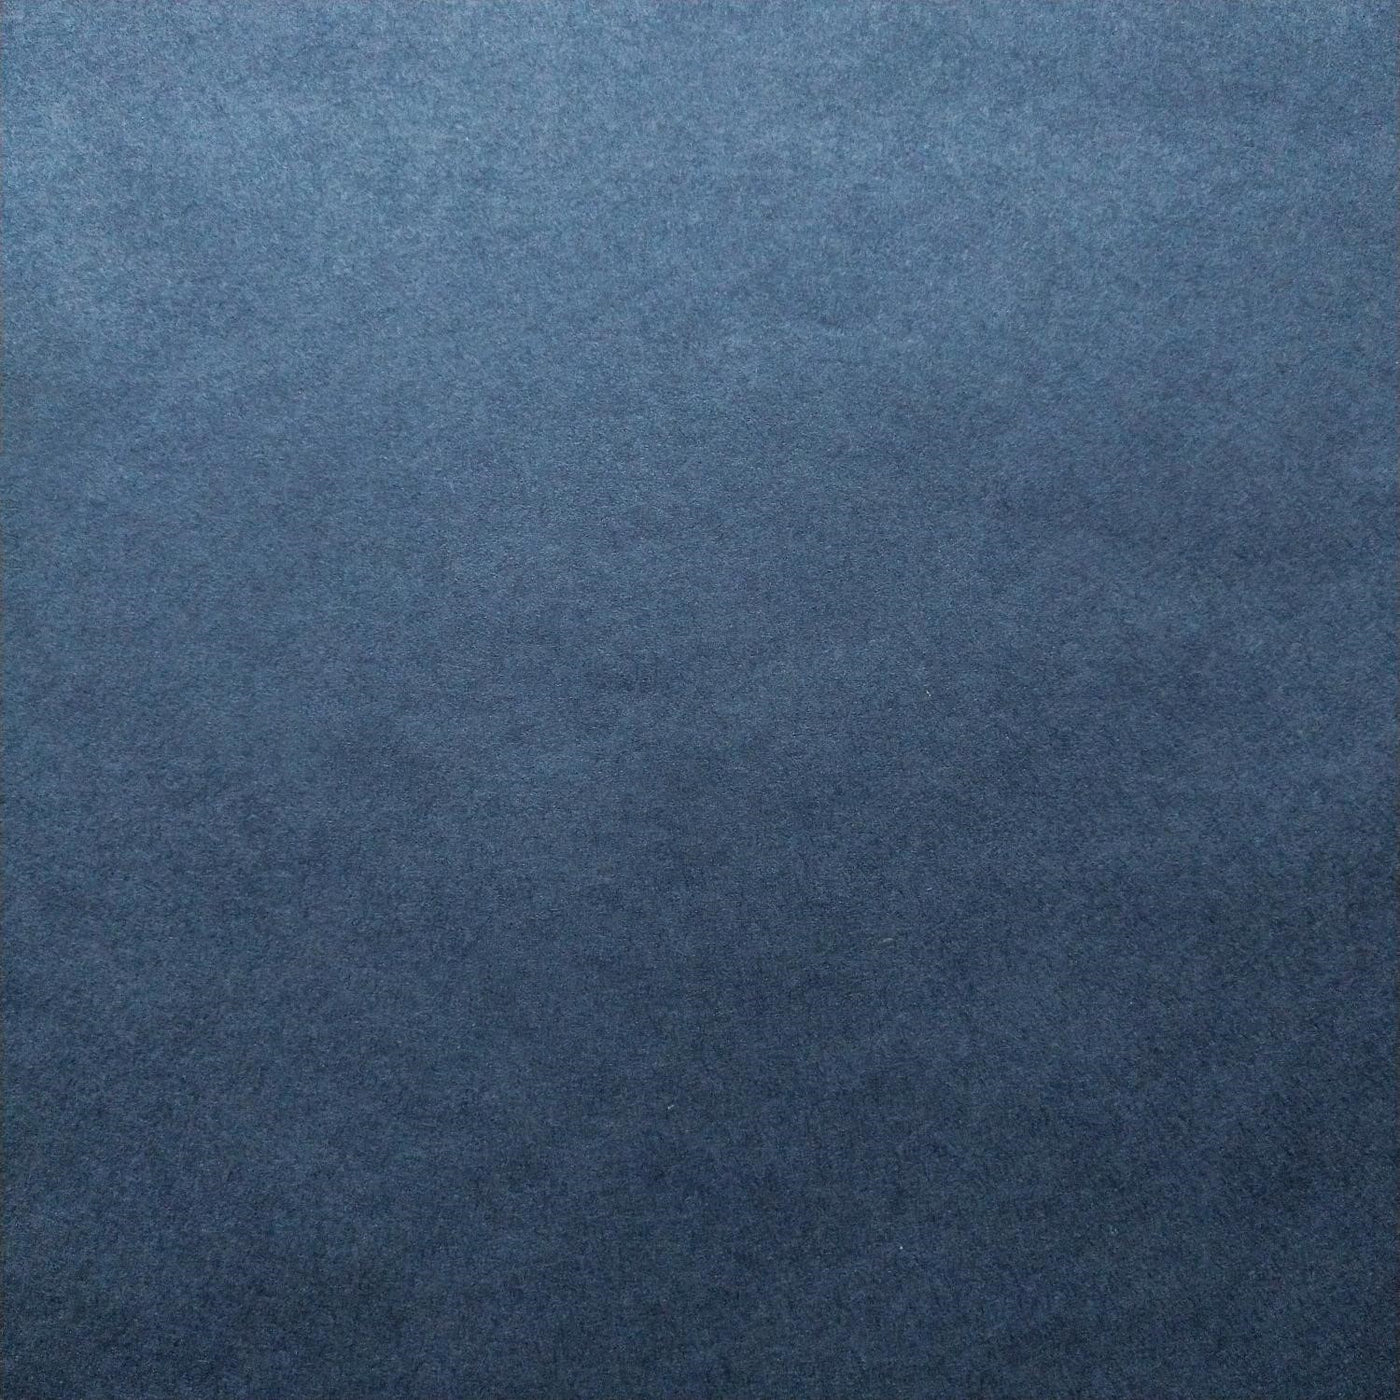 Papier Kozo de couleur unie (bleu denim)